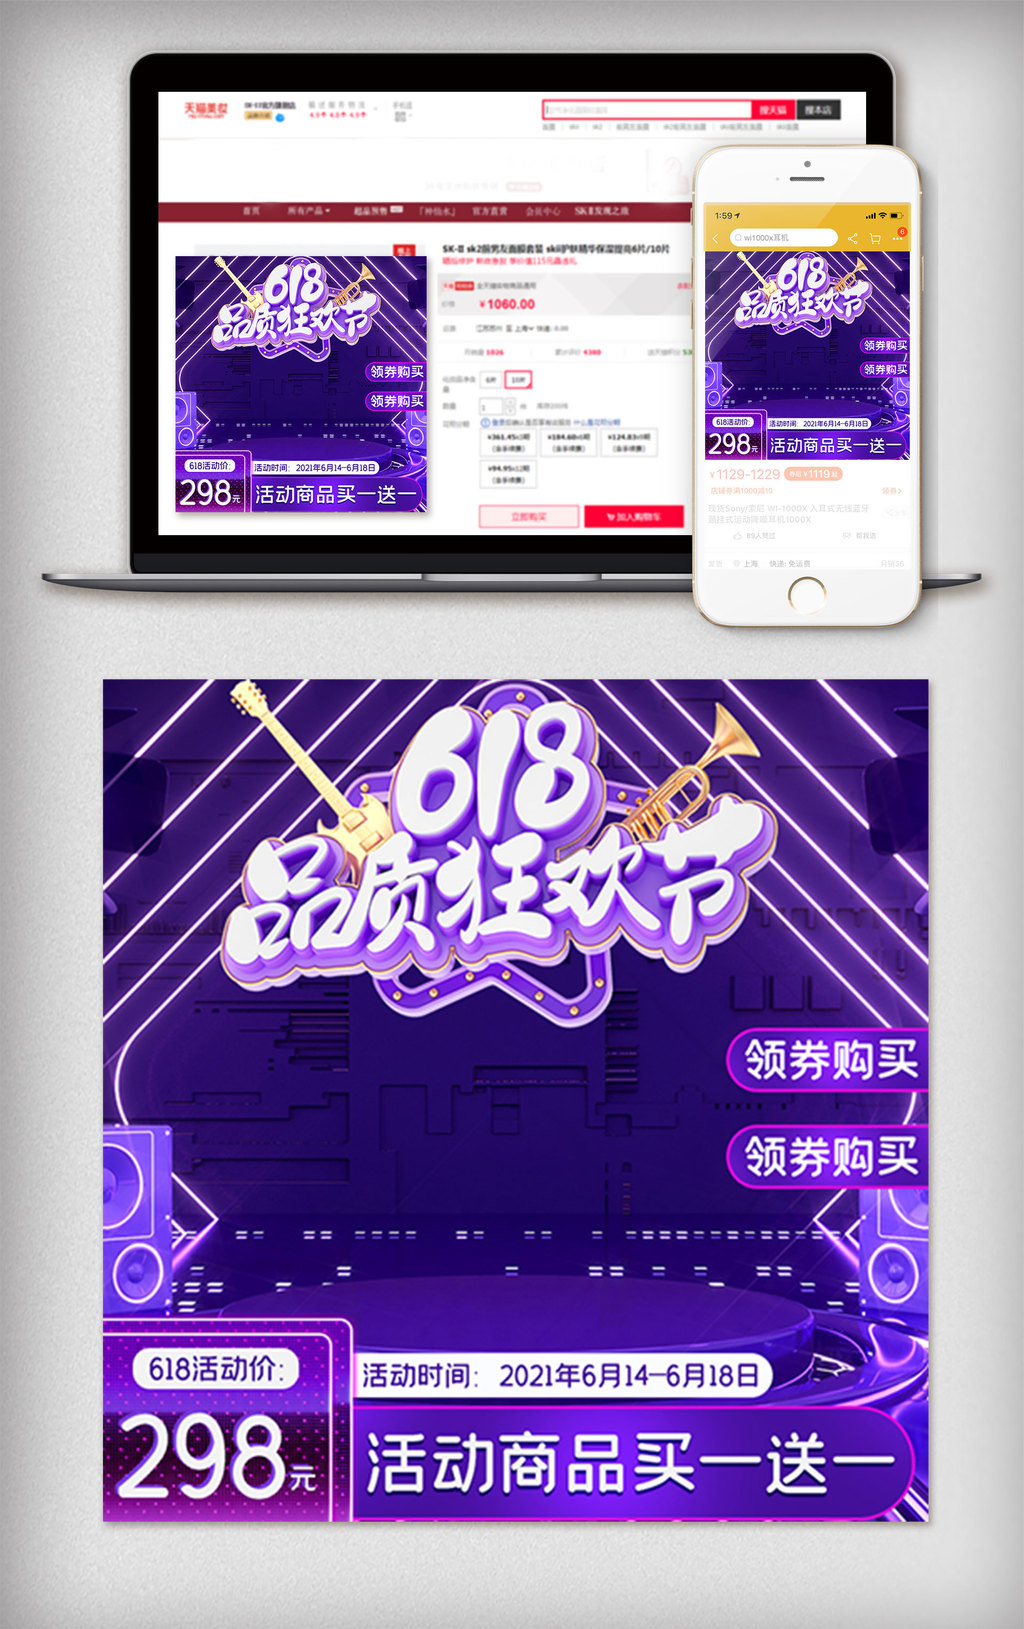 618紫色炫酷促销活动主图直通车模板图片